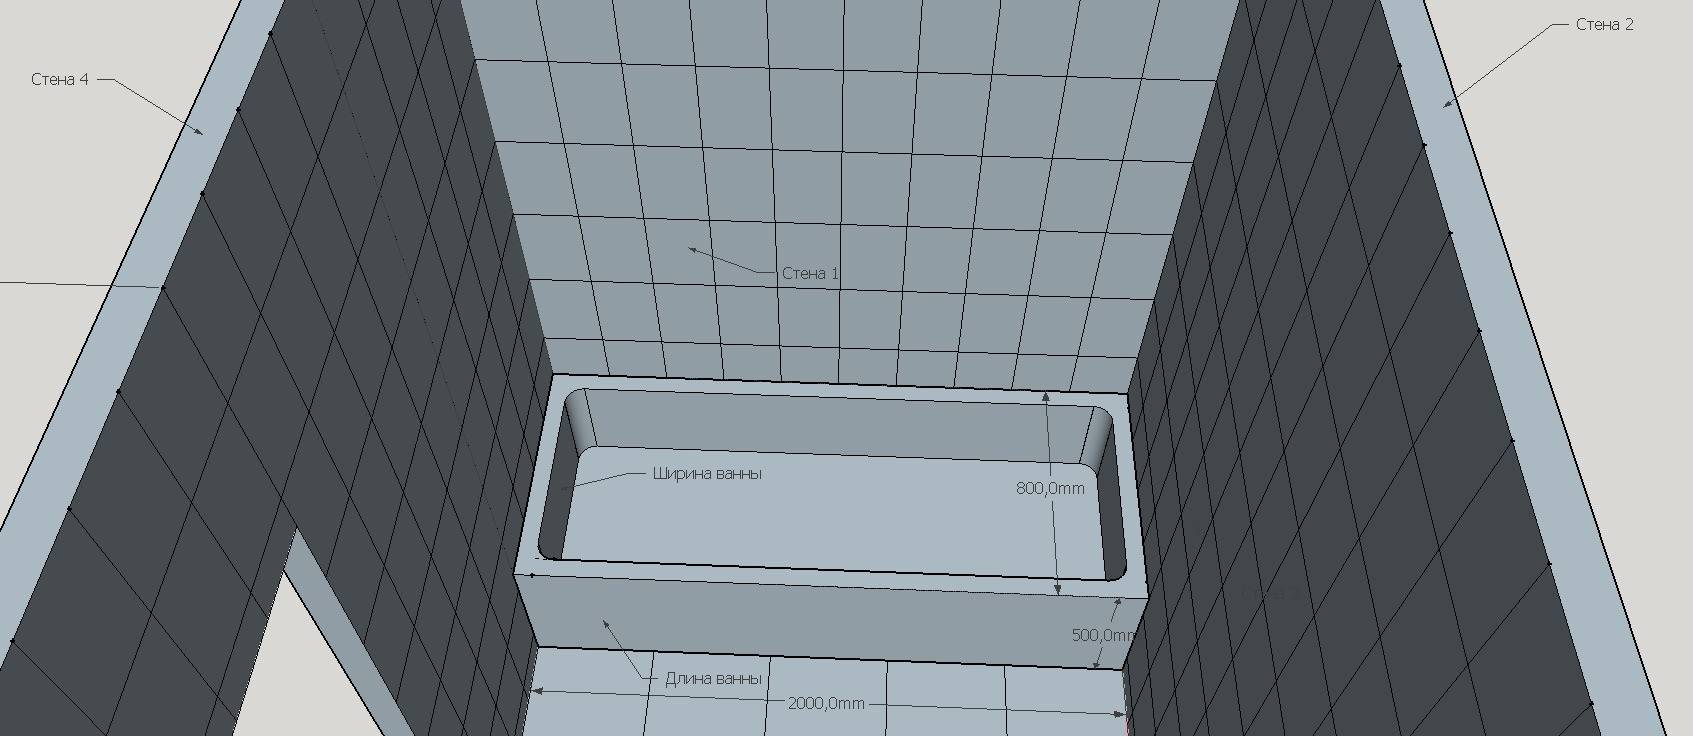 Плиточная плитка сколько. Калькулятор плитки для ванной. Высота плитки в санузлах. Плитка в ванную комнату толщина. Подсчет плитки в ванной.